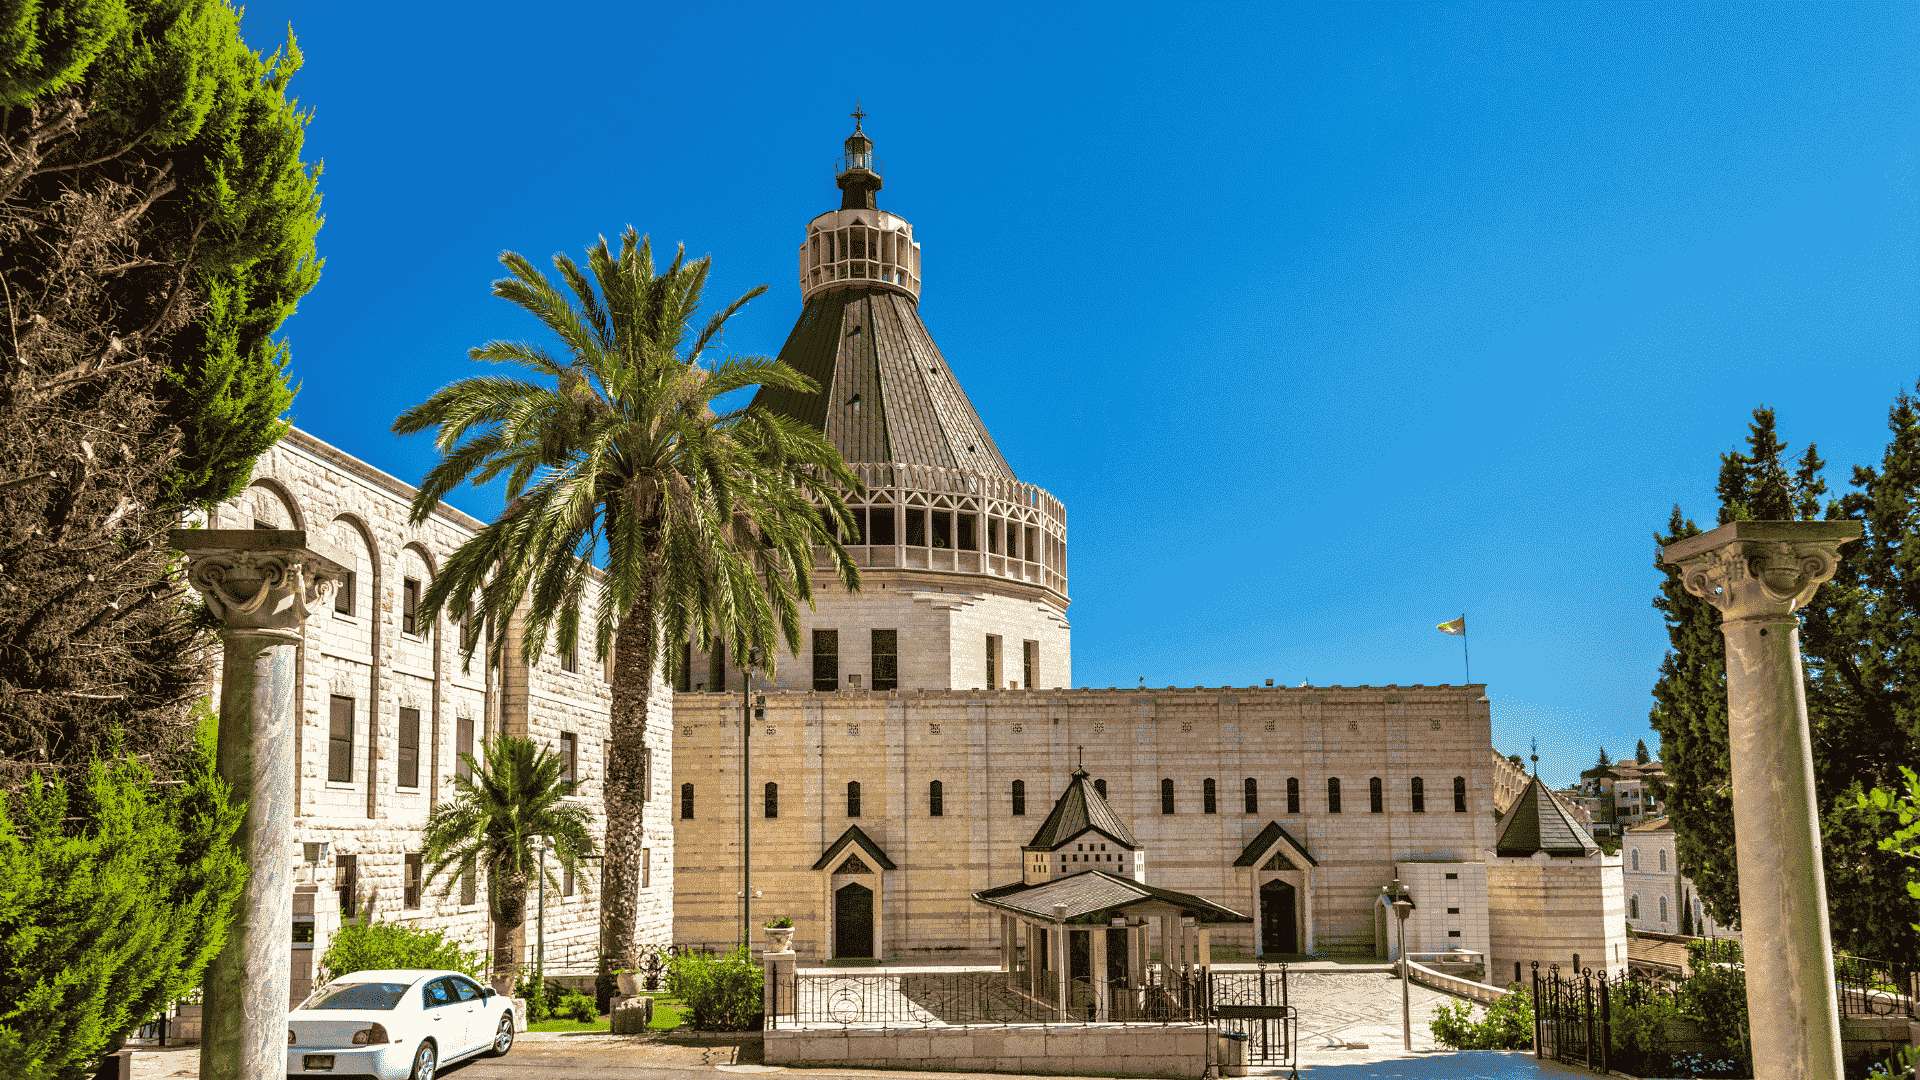 Nazareth, the appeal of Father Eugenio Alliata